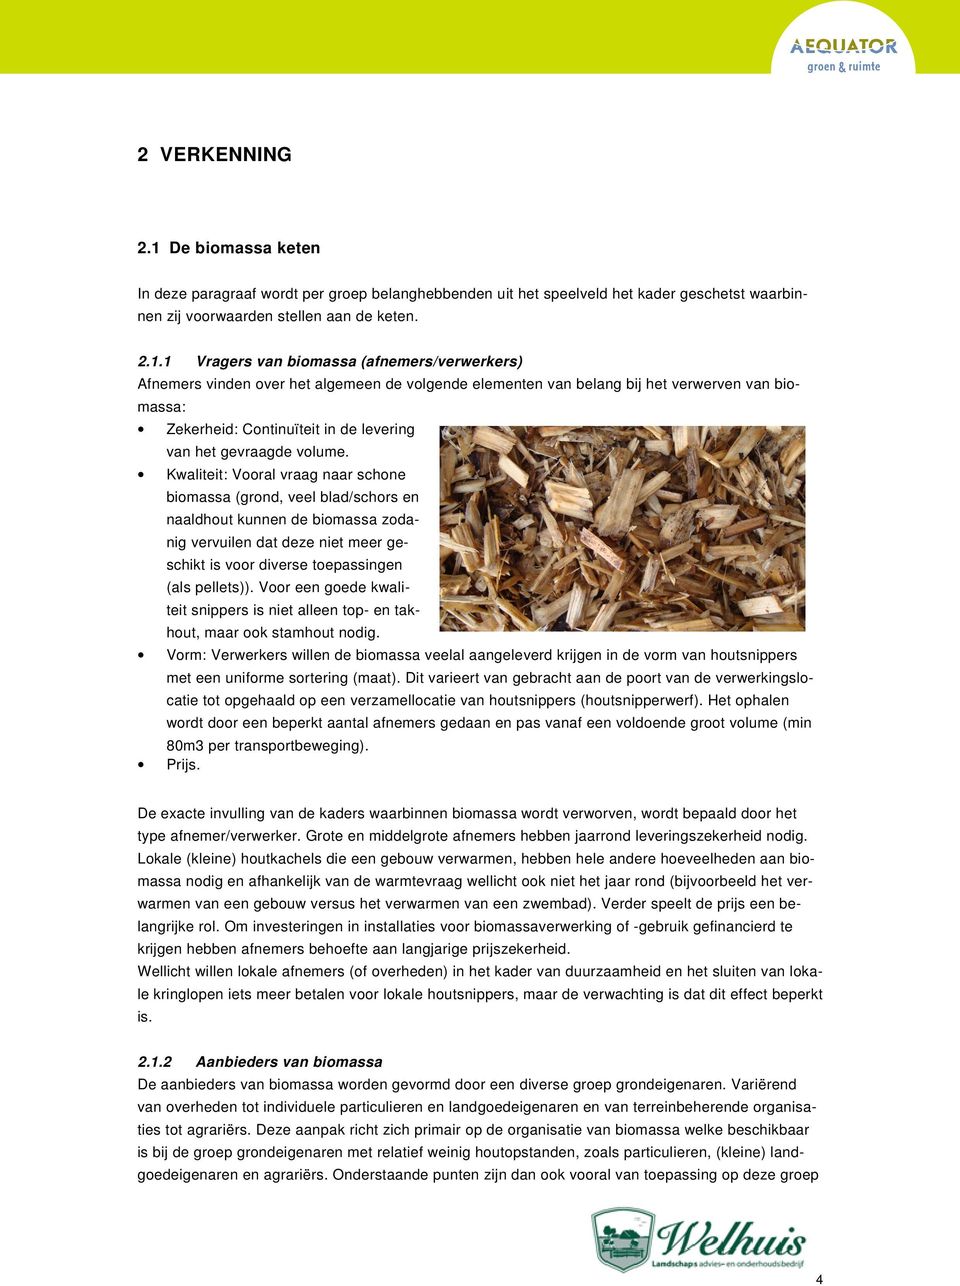 1 Vragers van biomassa (afnemers/verwerkers) Afnemers vinden over het algemeen de volgende elementen van belang bij het verwerven van biomassa: Zekerheid: Continuïteit in de levering van het